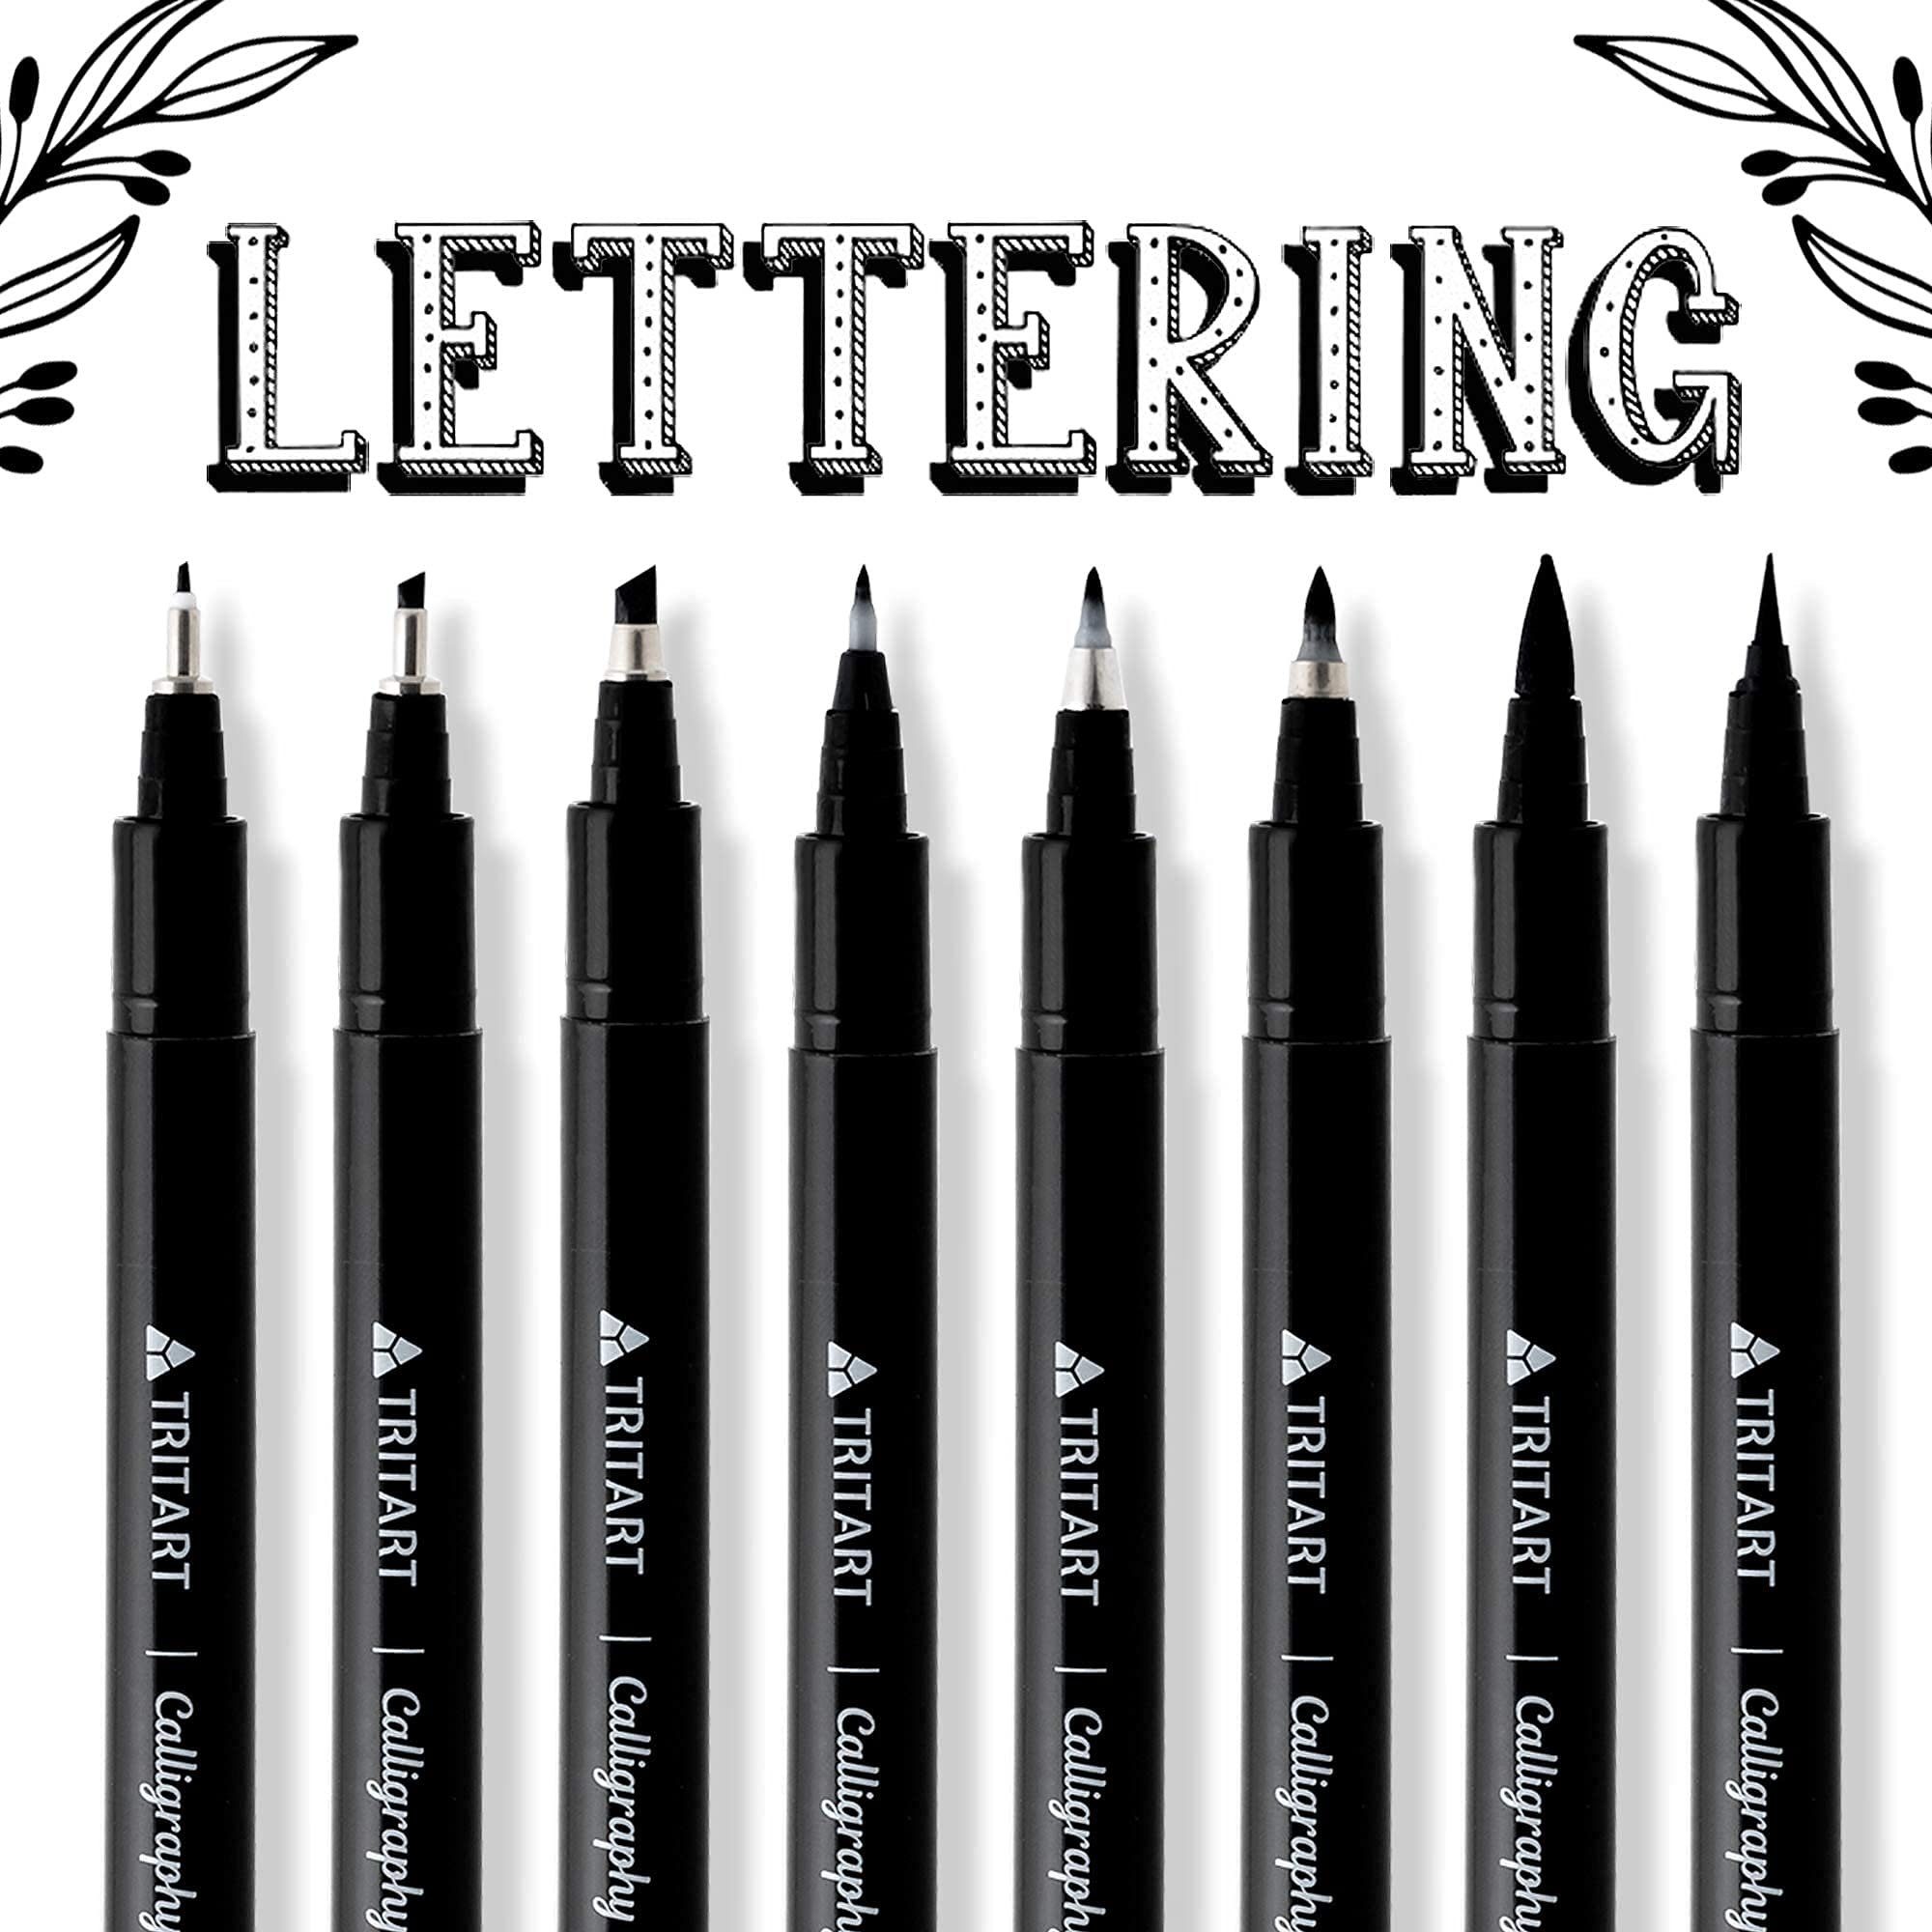 Tritart Pinselstift Kalligraphie Pinselstifte Set: 8 Stifte für Handlettering und Malerei, Kalligraphie Stifte Set: 8 Pinselstifte für Handlettering und Malen